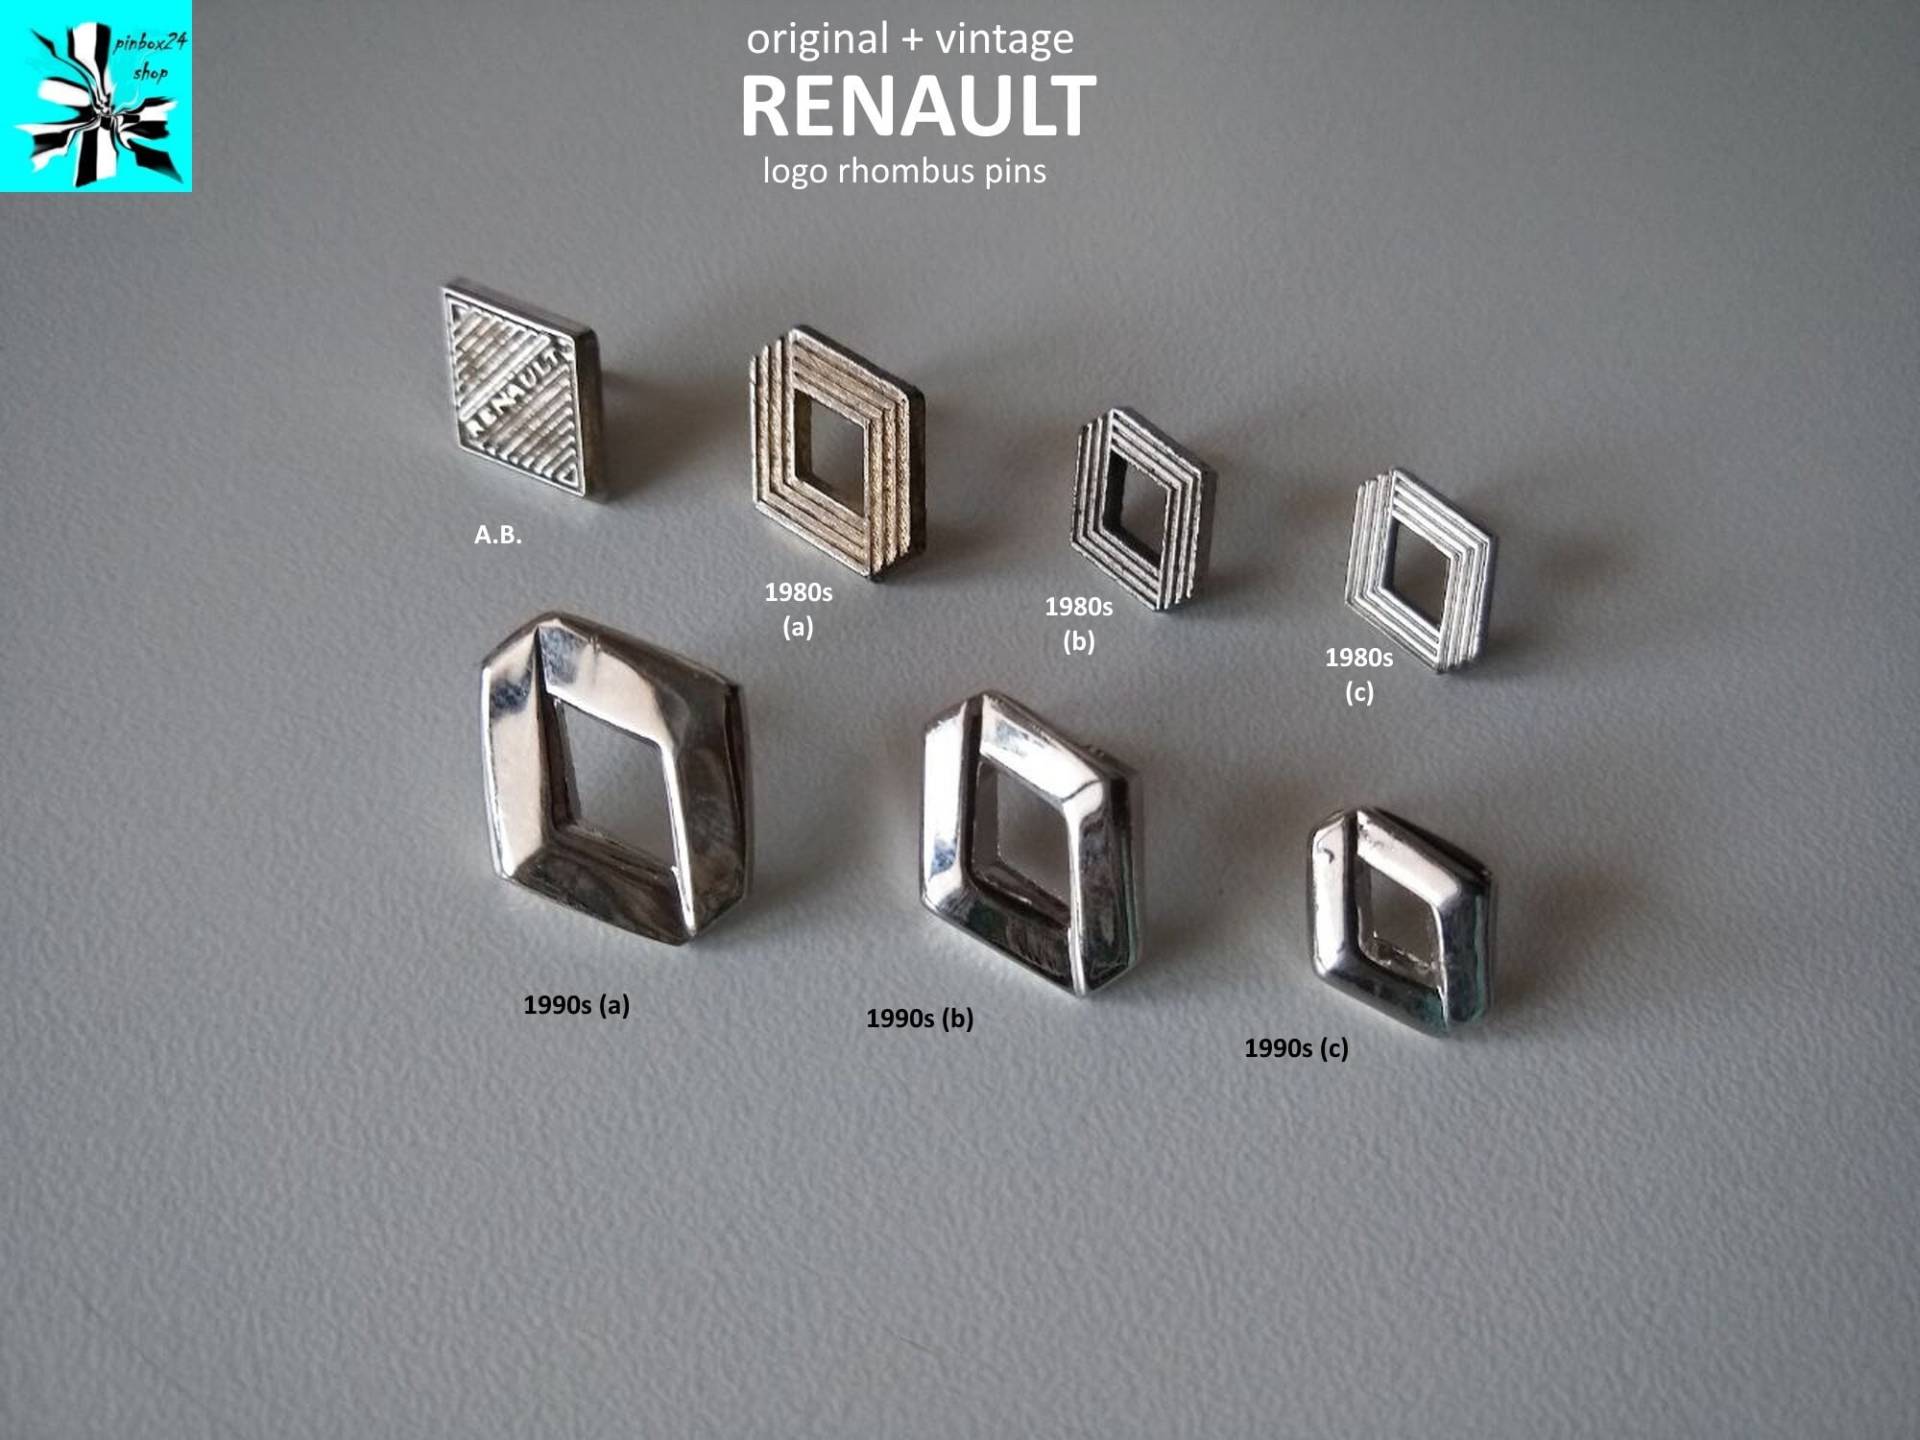 Vintage Renault Logo Raute Pins Aus Den 80Er/90Er - Jetzt Auswählen von pinbox24shop